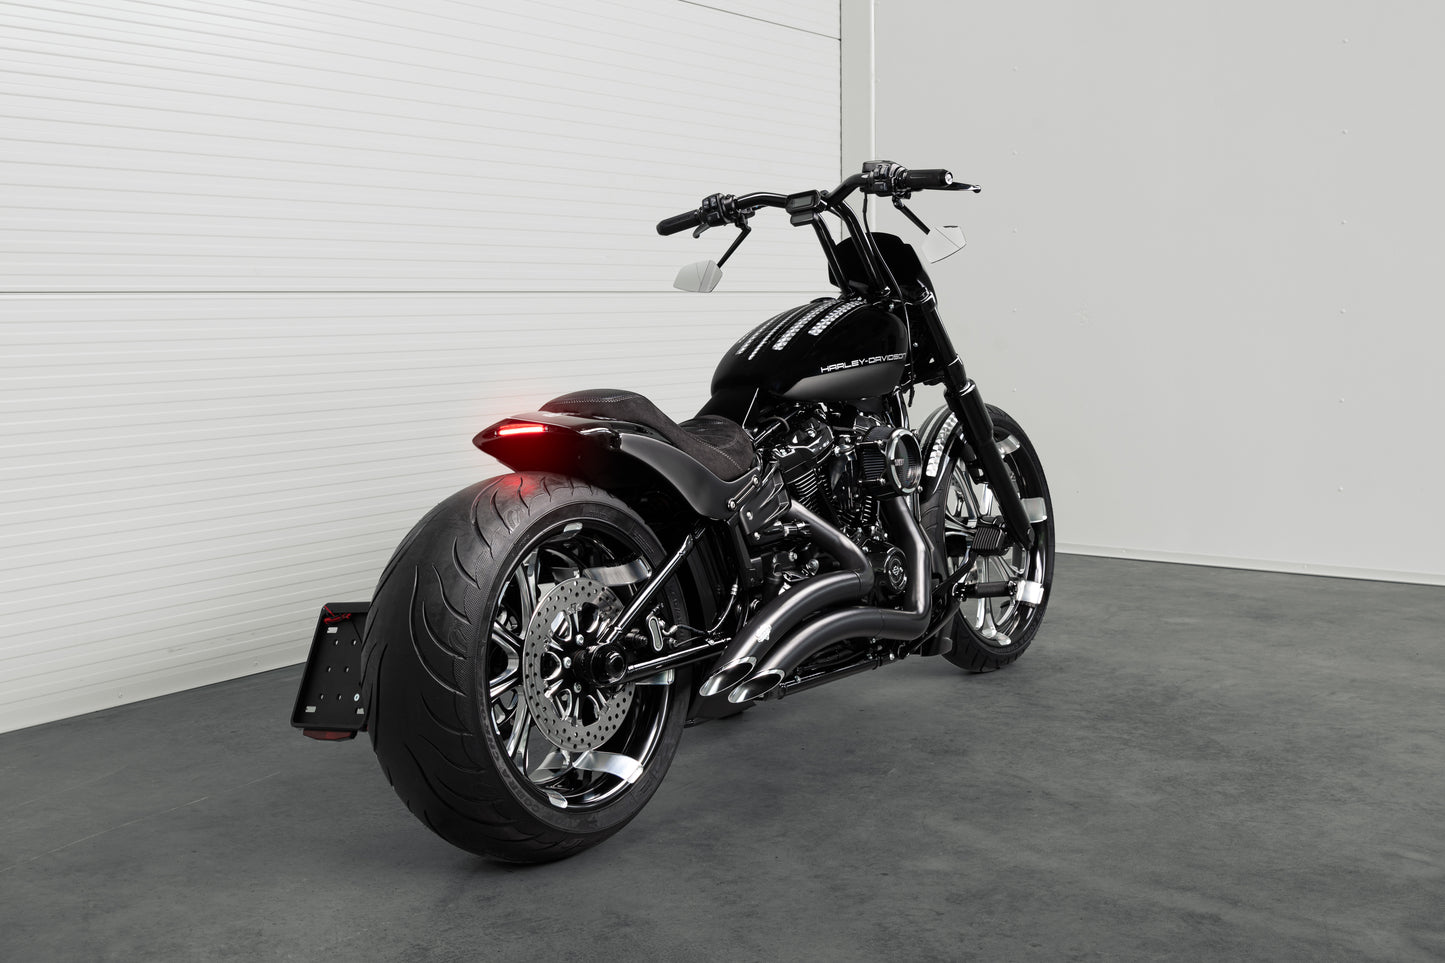  Harley Davidson motorcycle with Killer Custom "Avenger" rear fender kit from the rear in a white modern garage